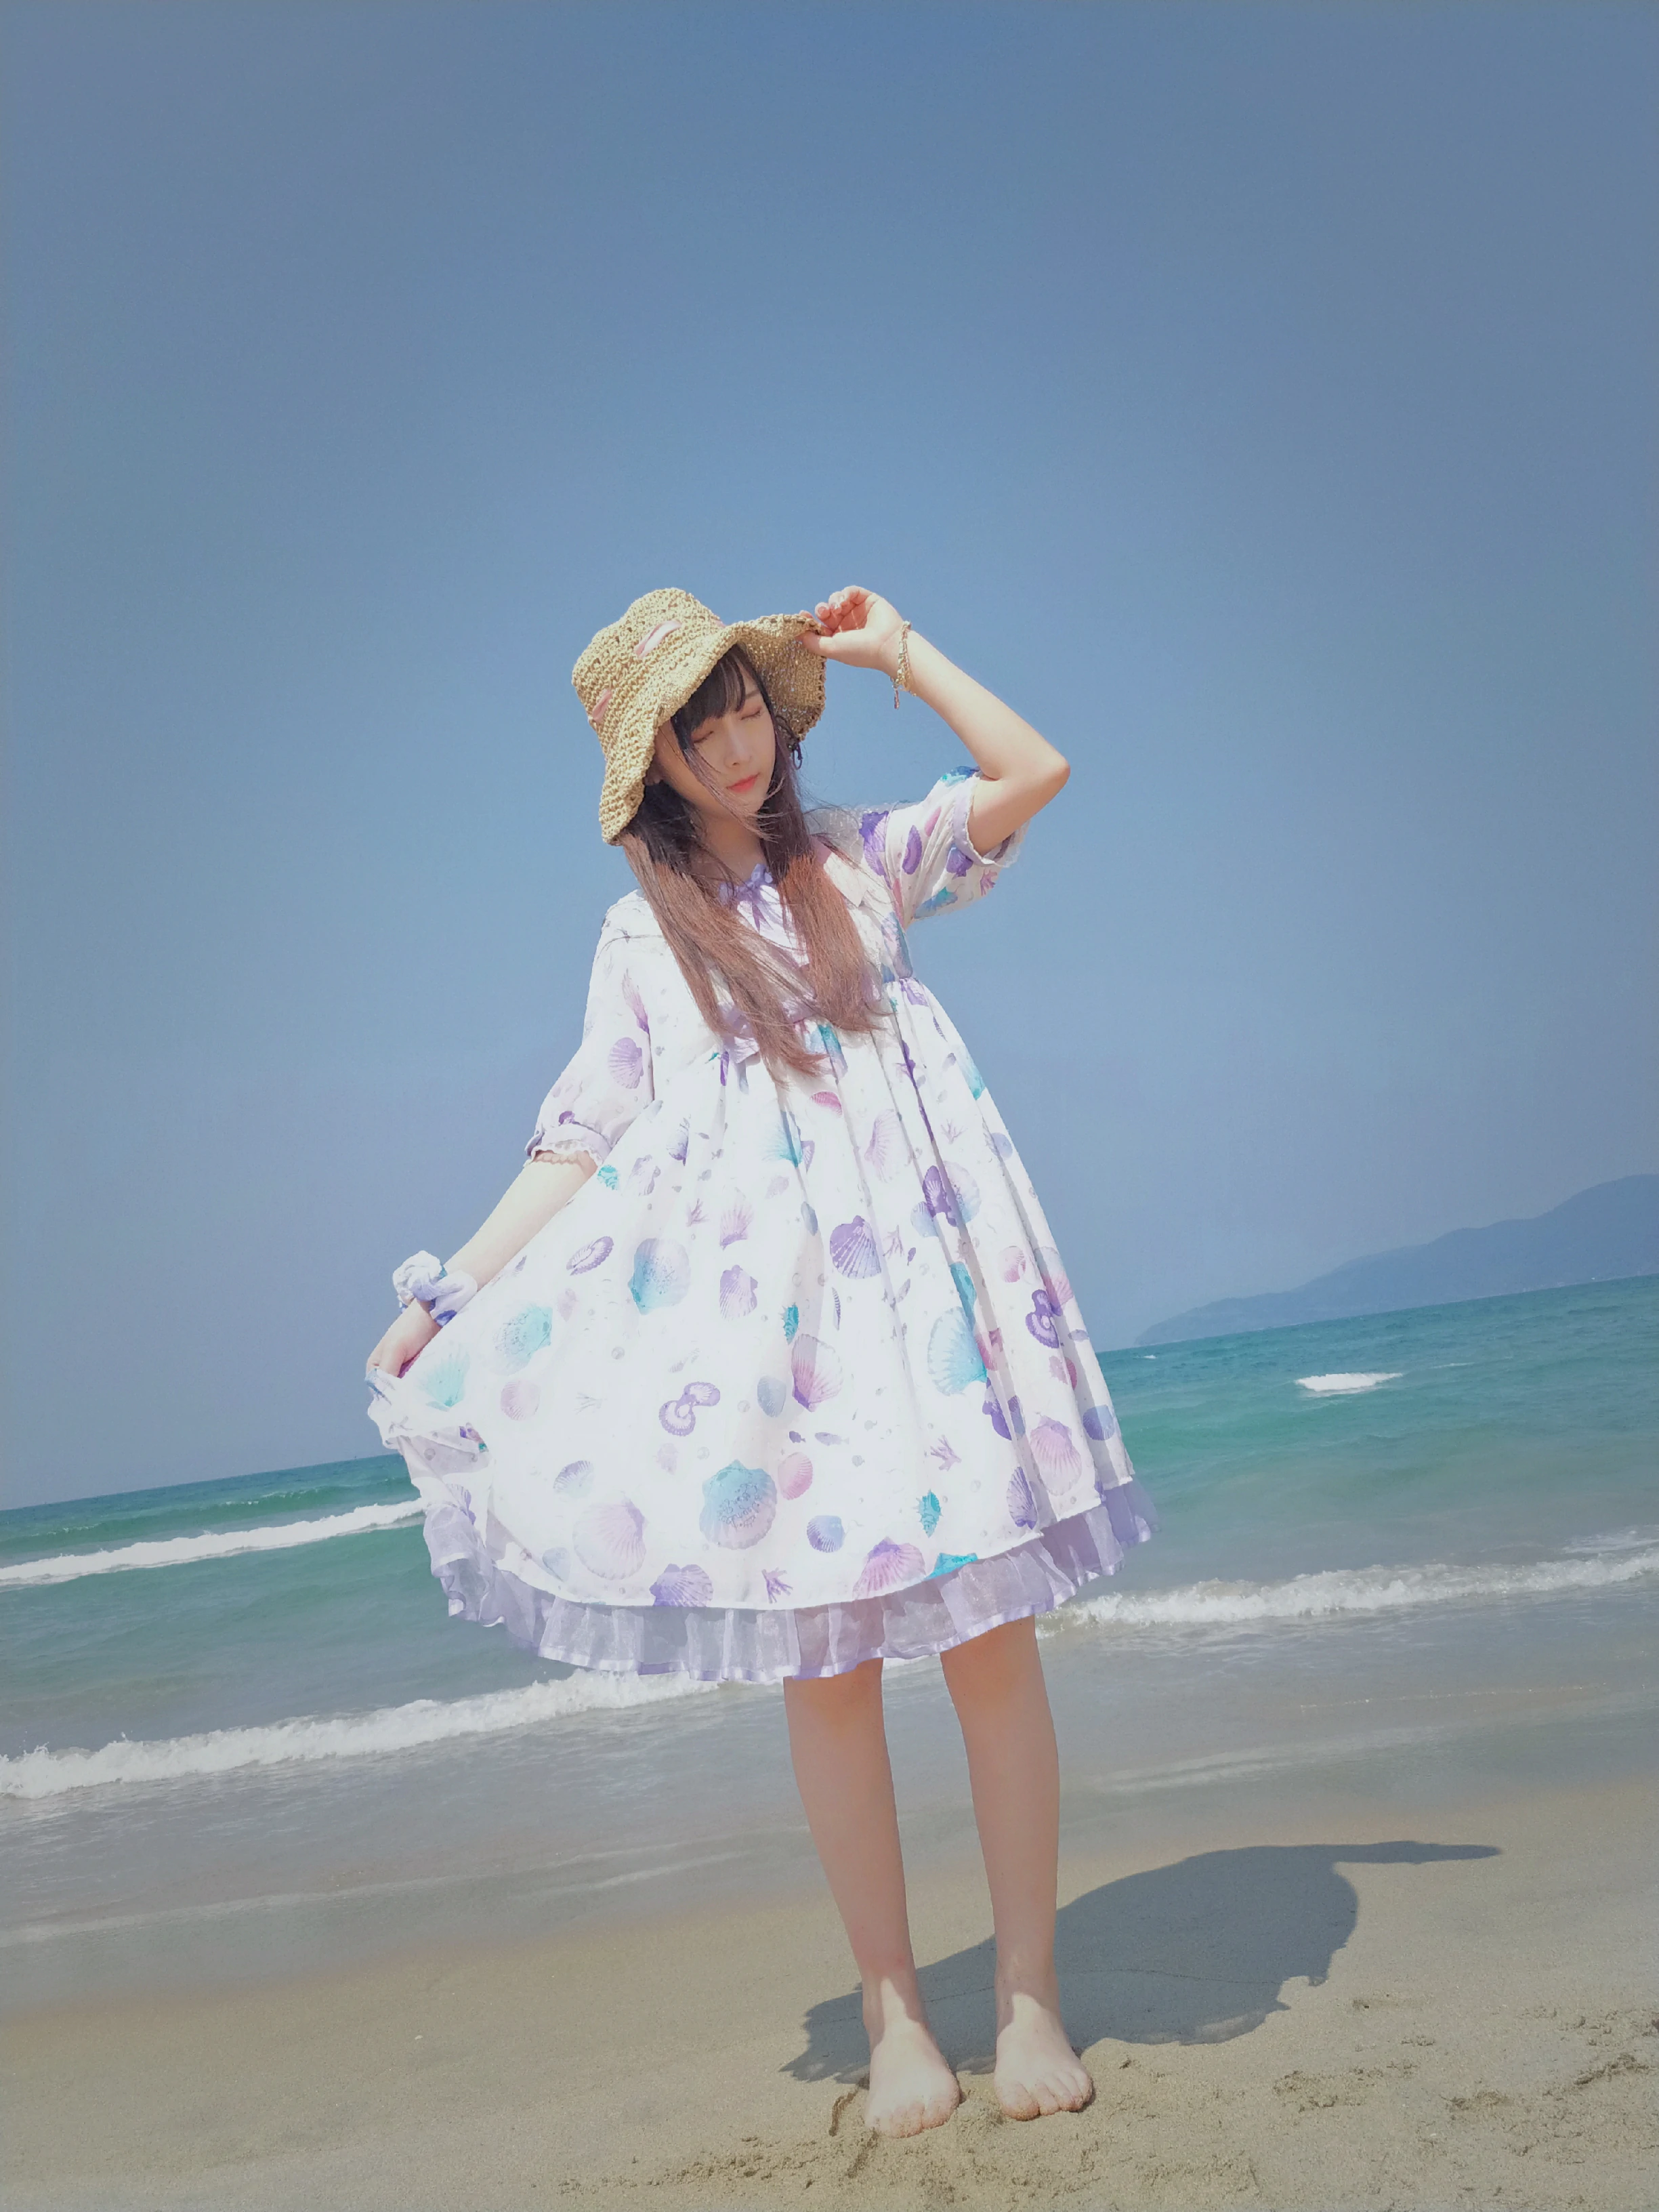 清纯少女 古川kagura 蓝色连身裙之沙滩写真,_20190207_150342